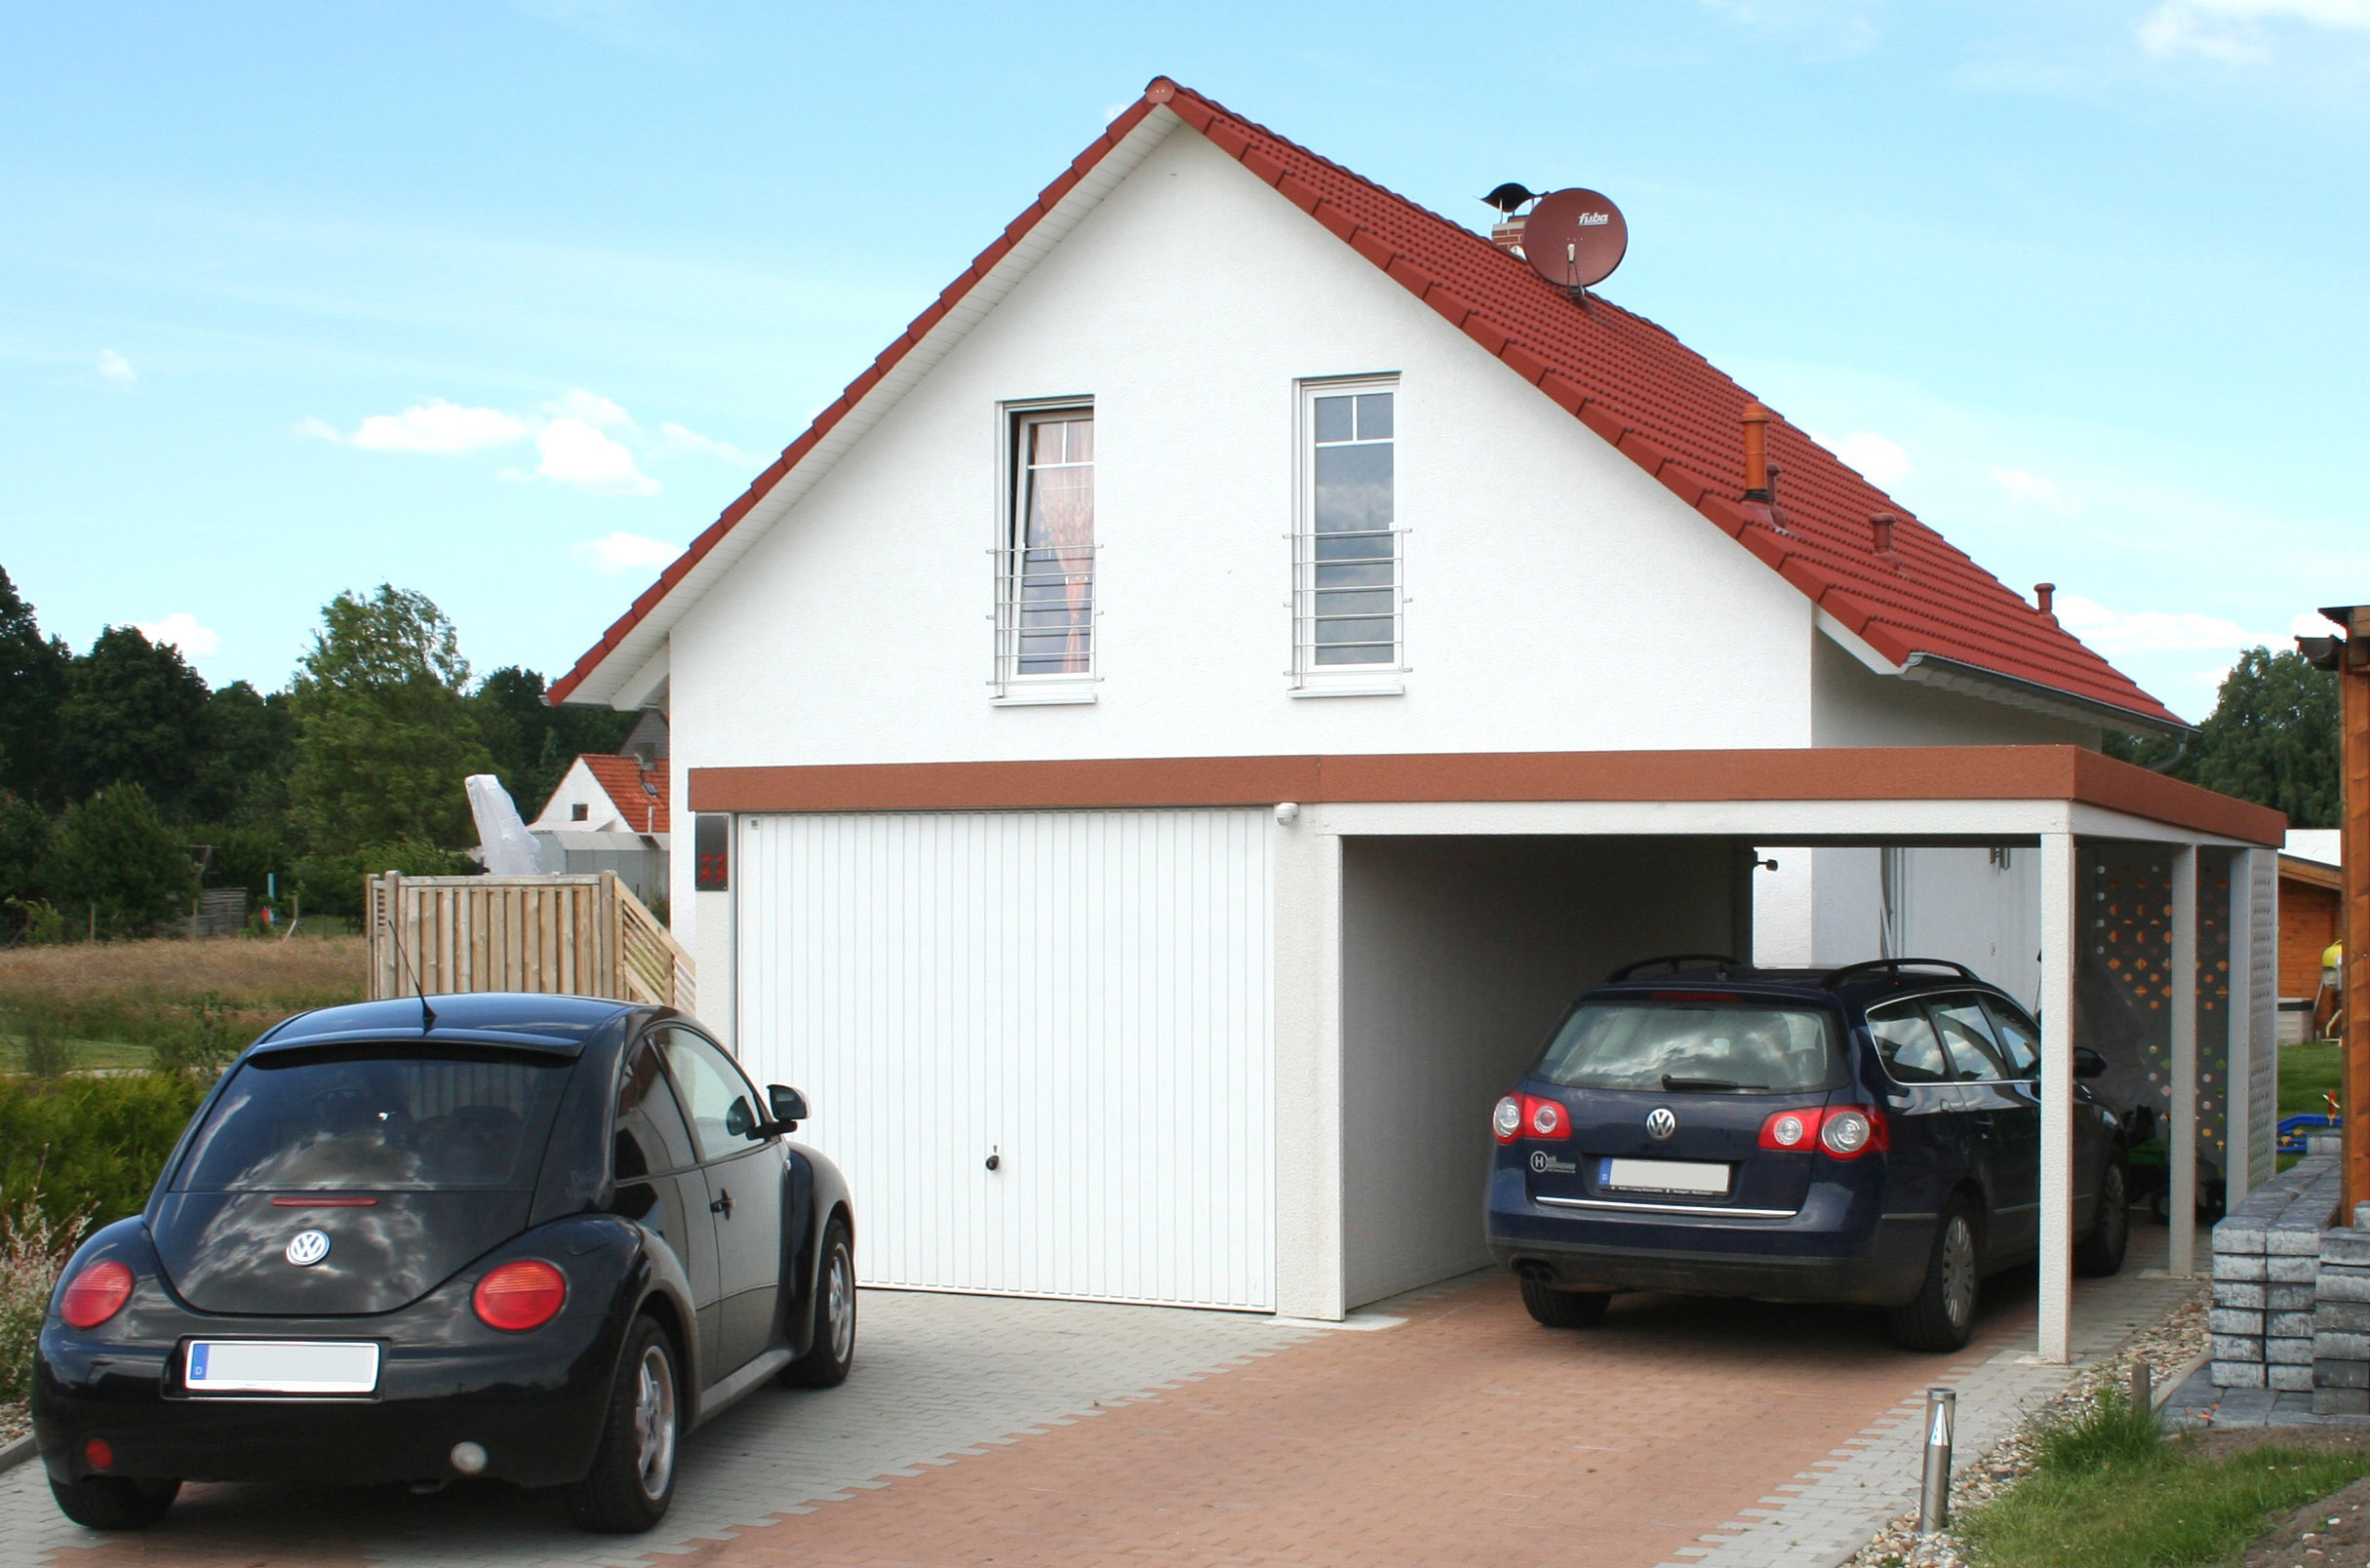 Garage mit Carport udn Autos vor Einfamilienhaus.